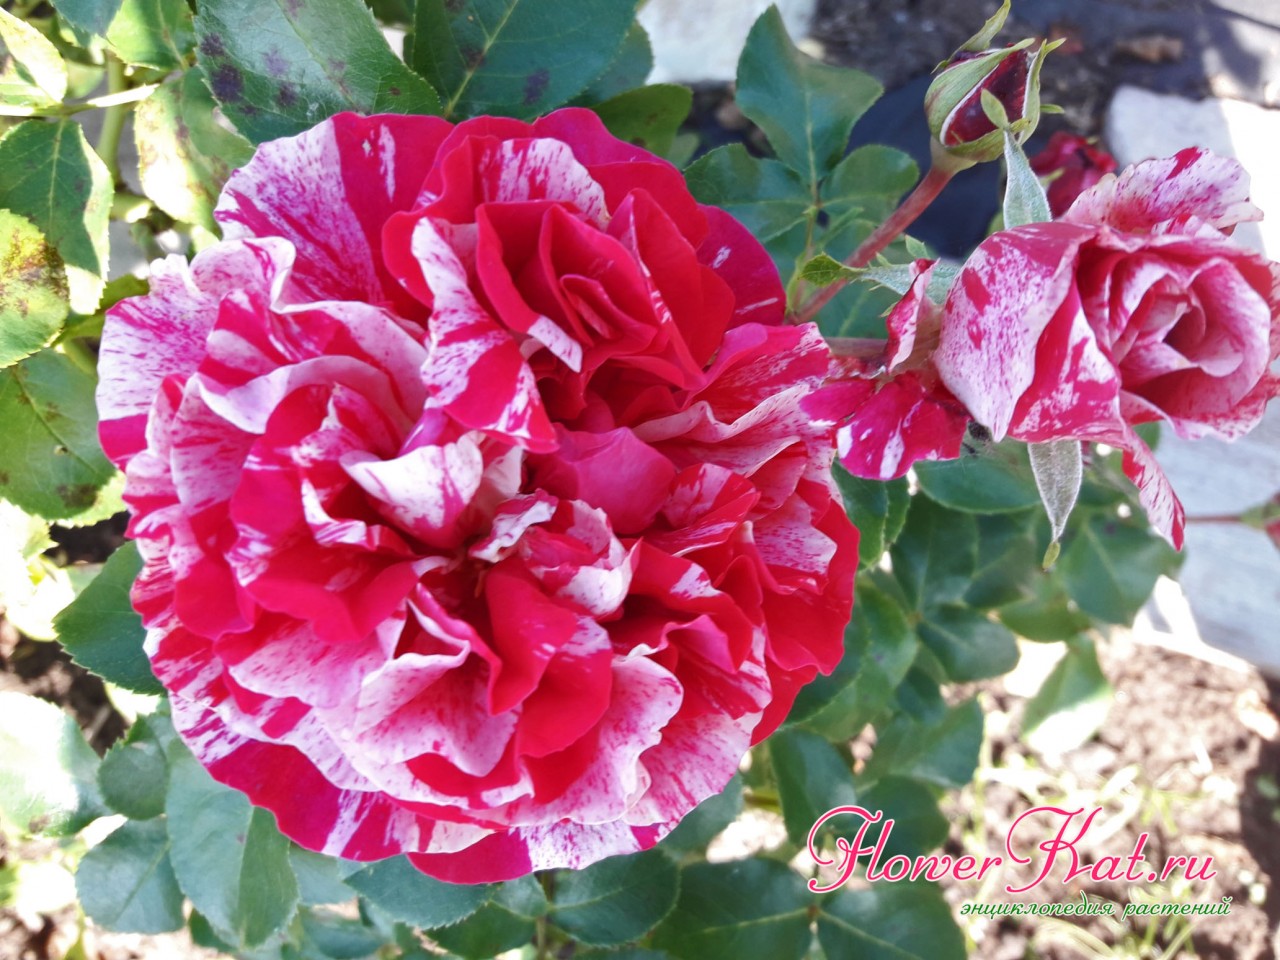 Окраска розы Инес Састре - фотография цветка крупным планом